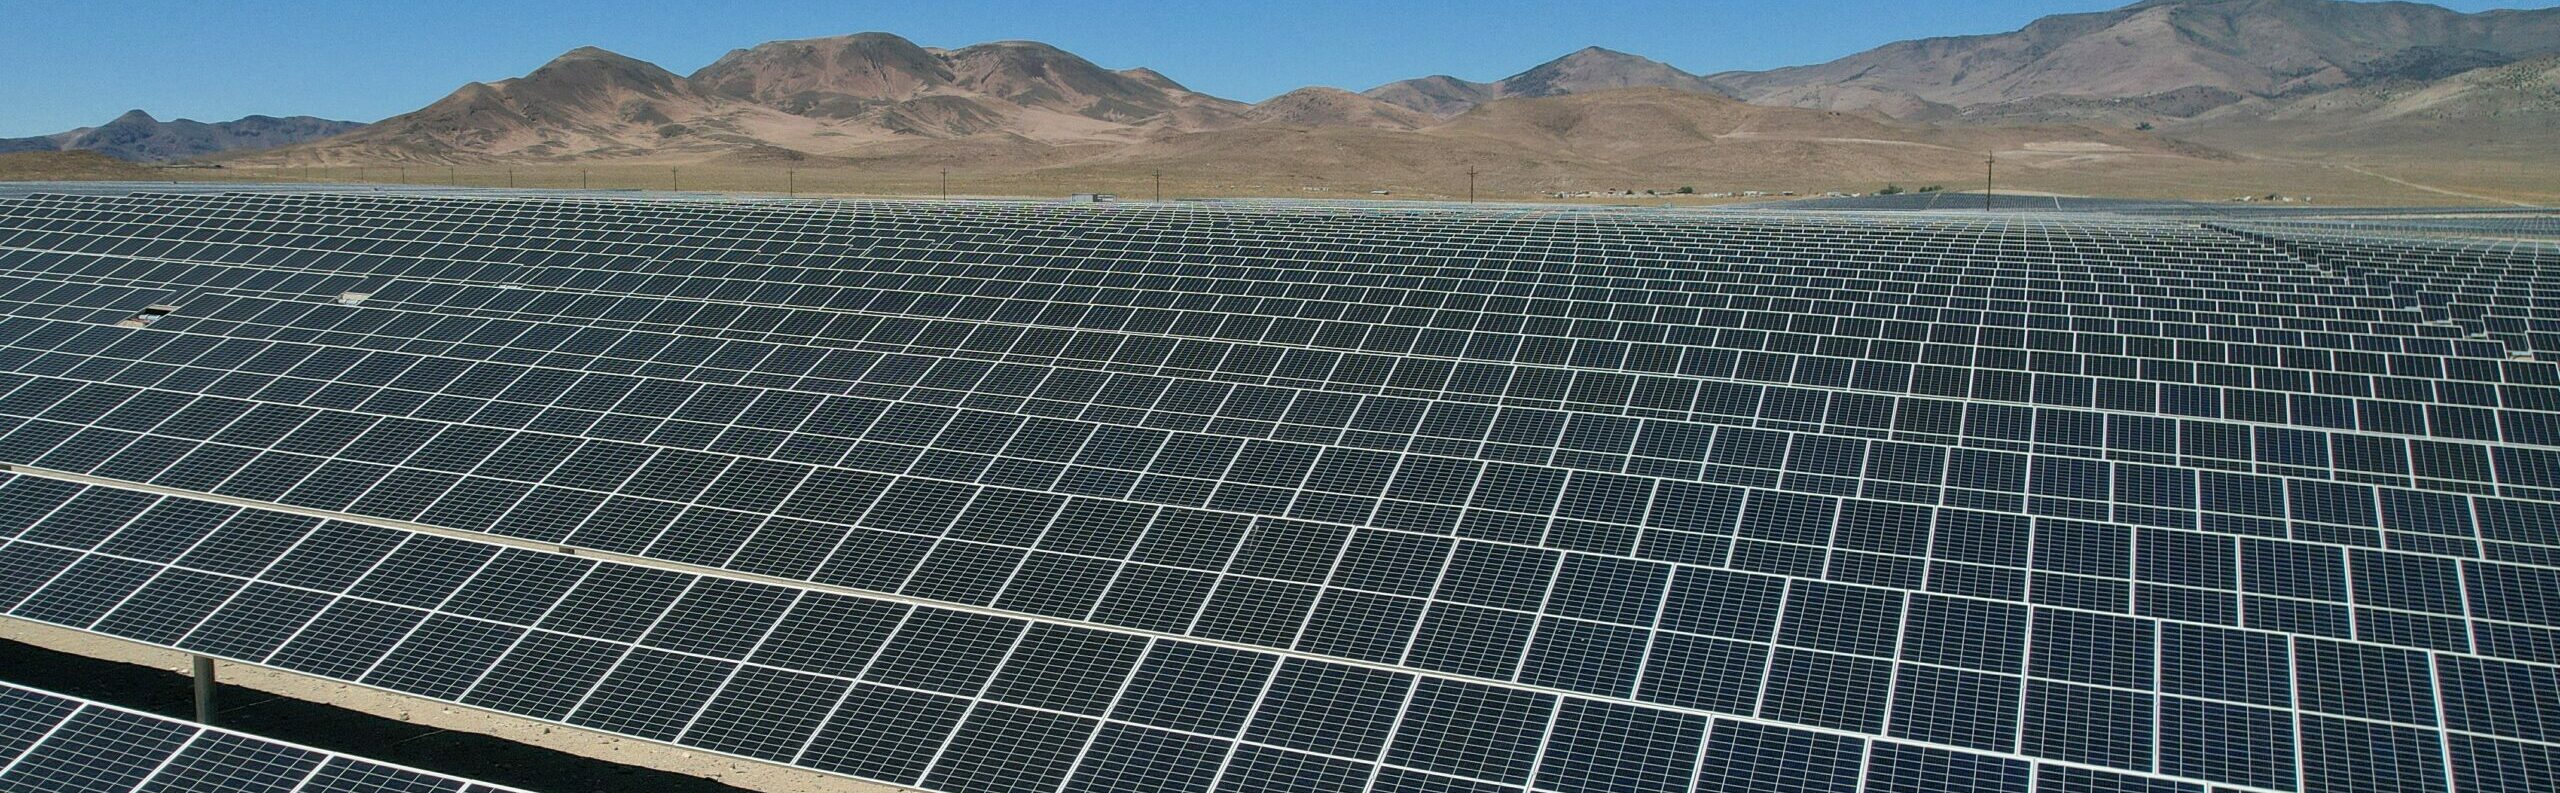 California-based solar park developers